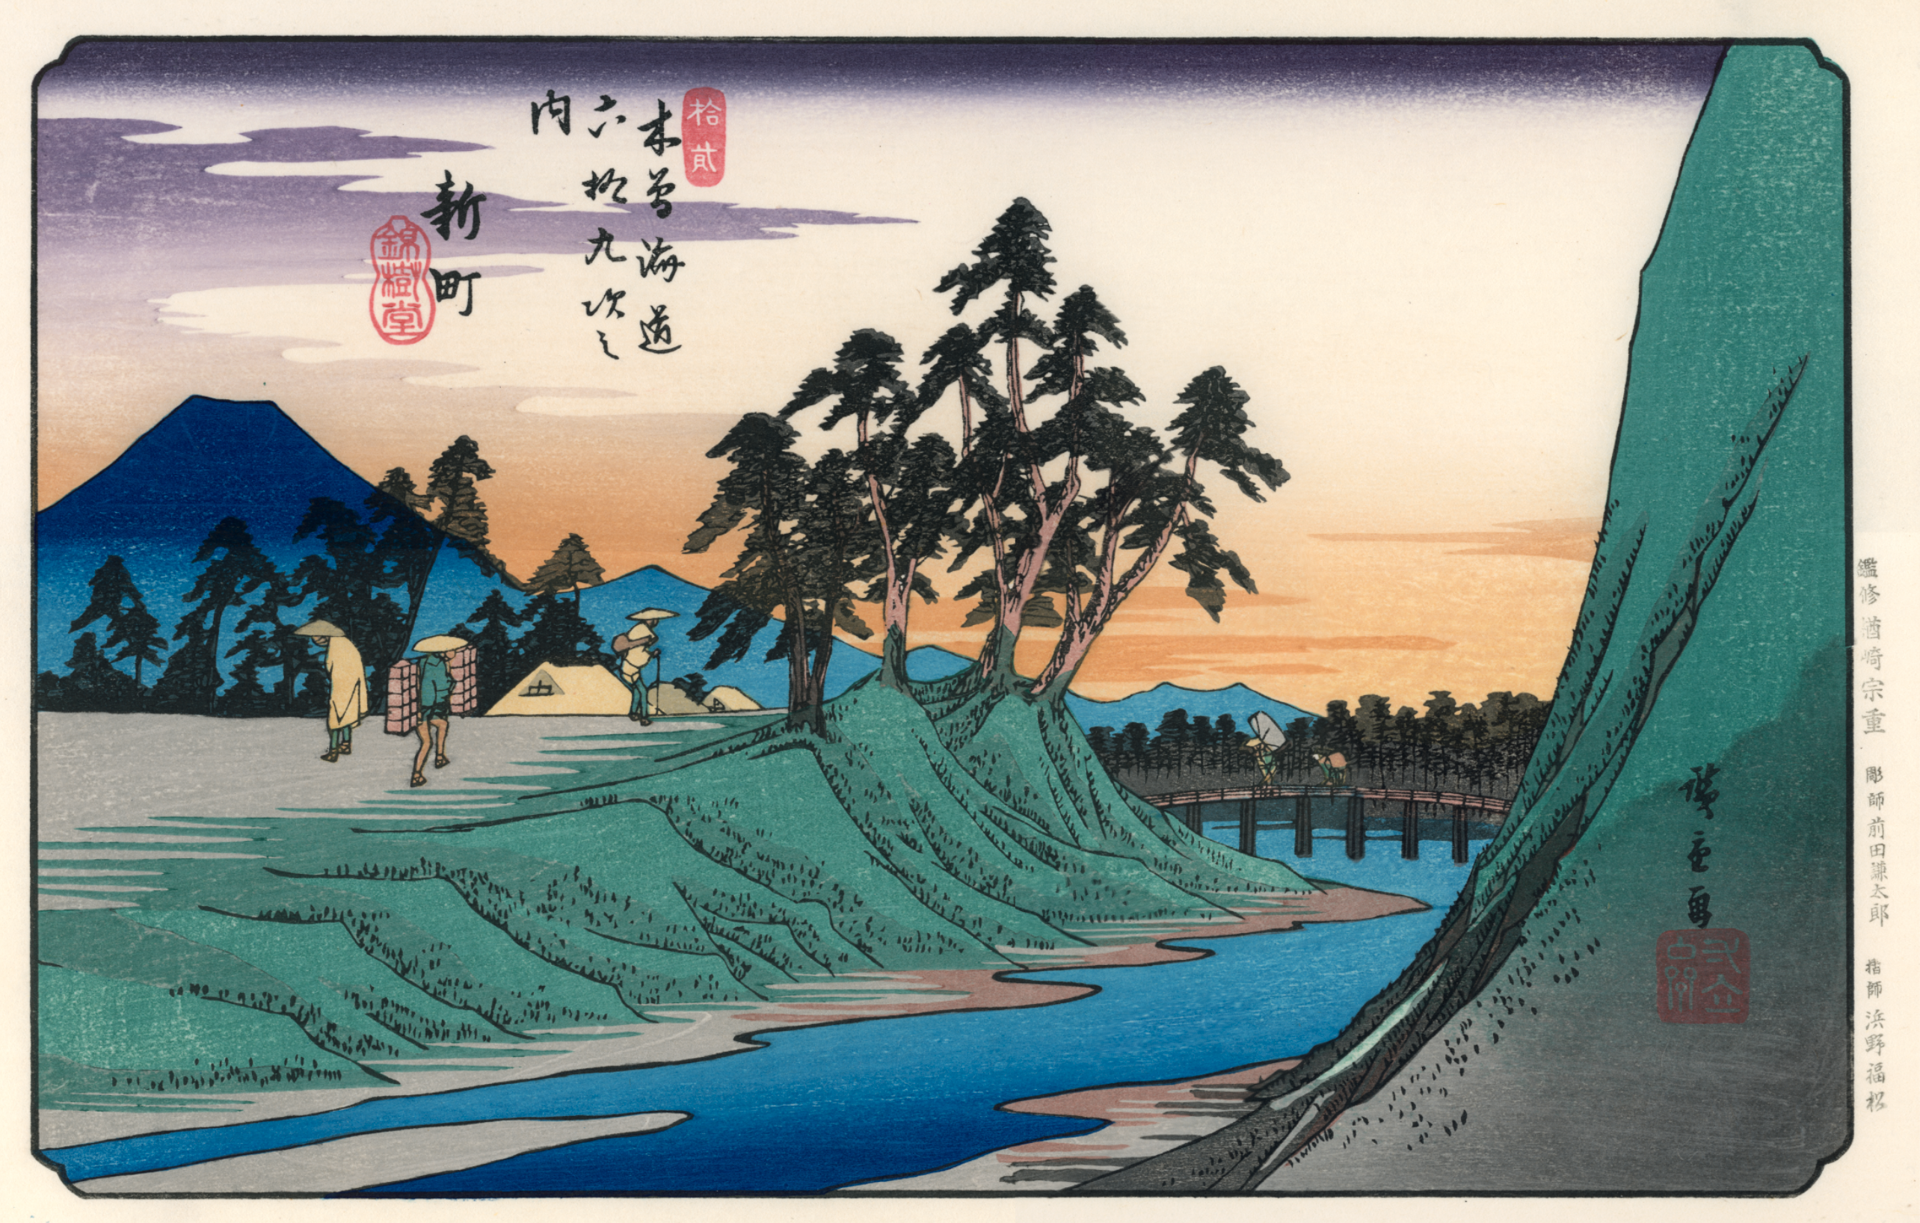 ⽊曾街道六⼗九次——新町 by 歌川⼴重 Utagawa Hiroshige